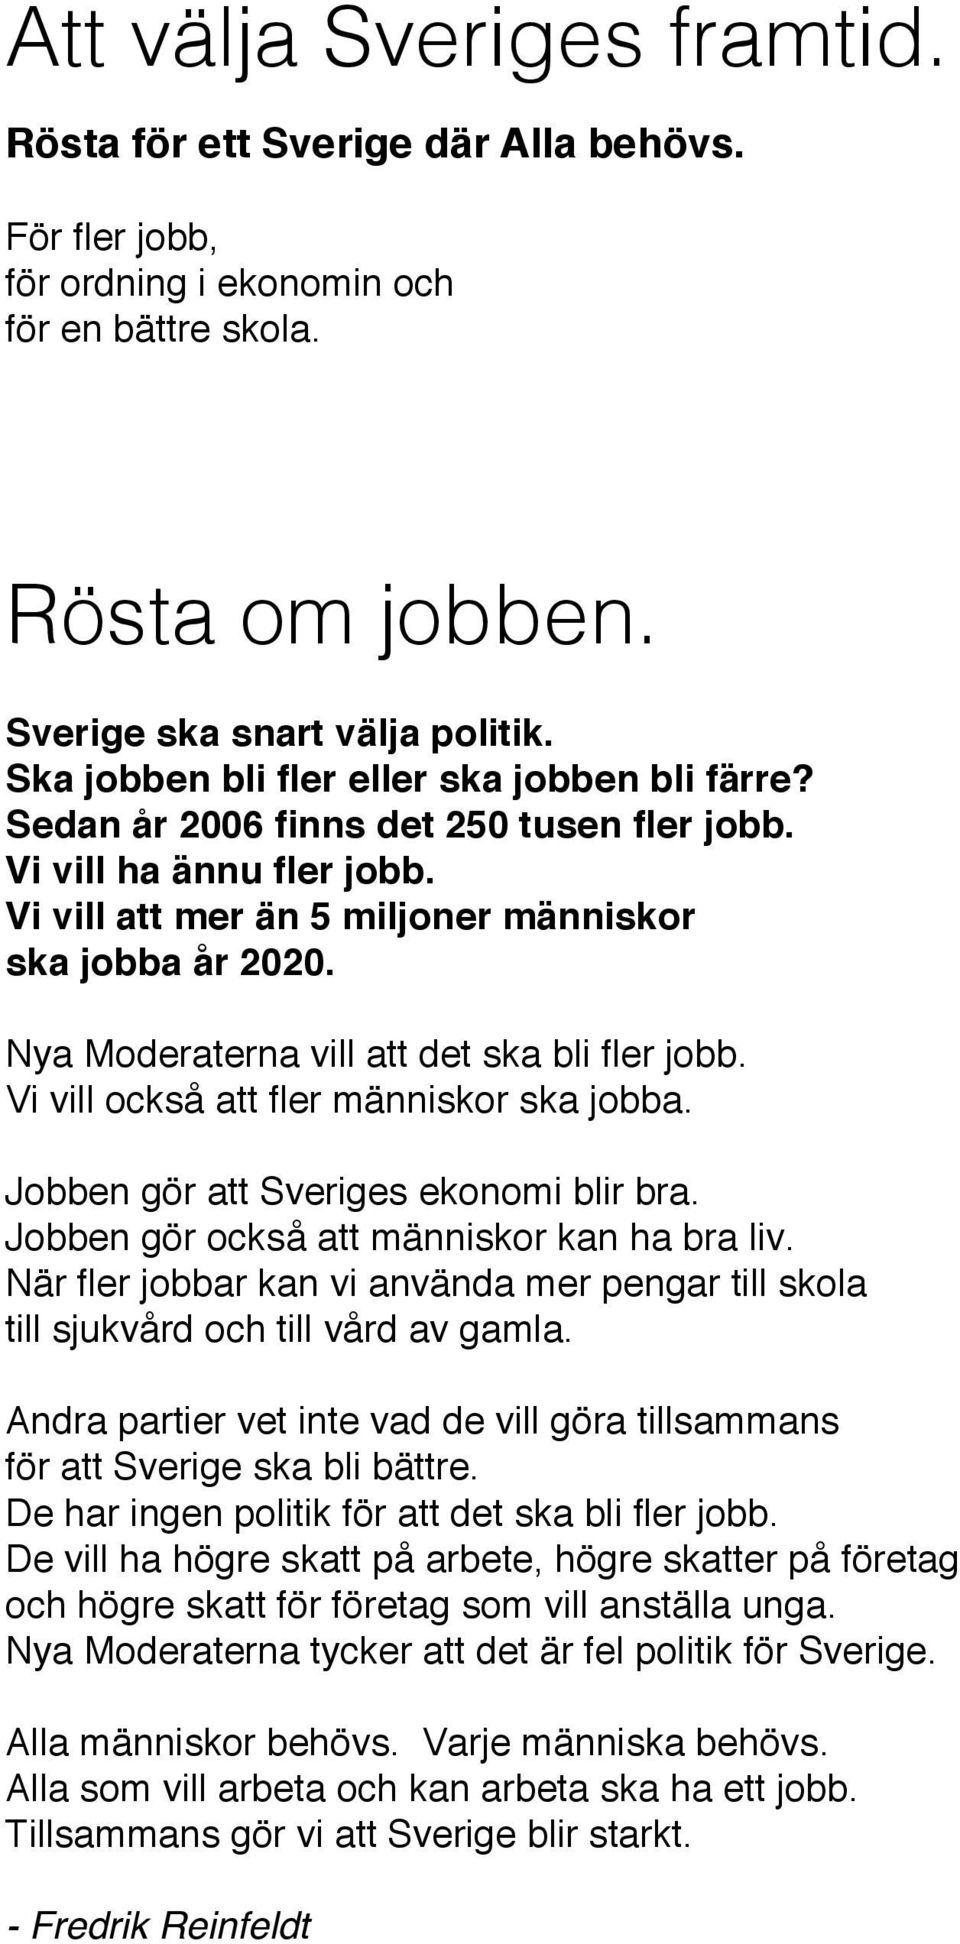 Nya Moderaterna vill att det ska bli fler jobb. Vi vill också att fler människor ska jobba. Jobben gör att Sveriges ekonomi blir bra. Jobben gör också att människor kan ha bra liv.